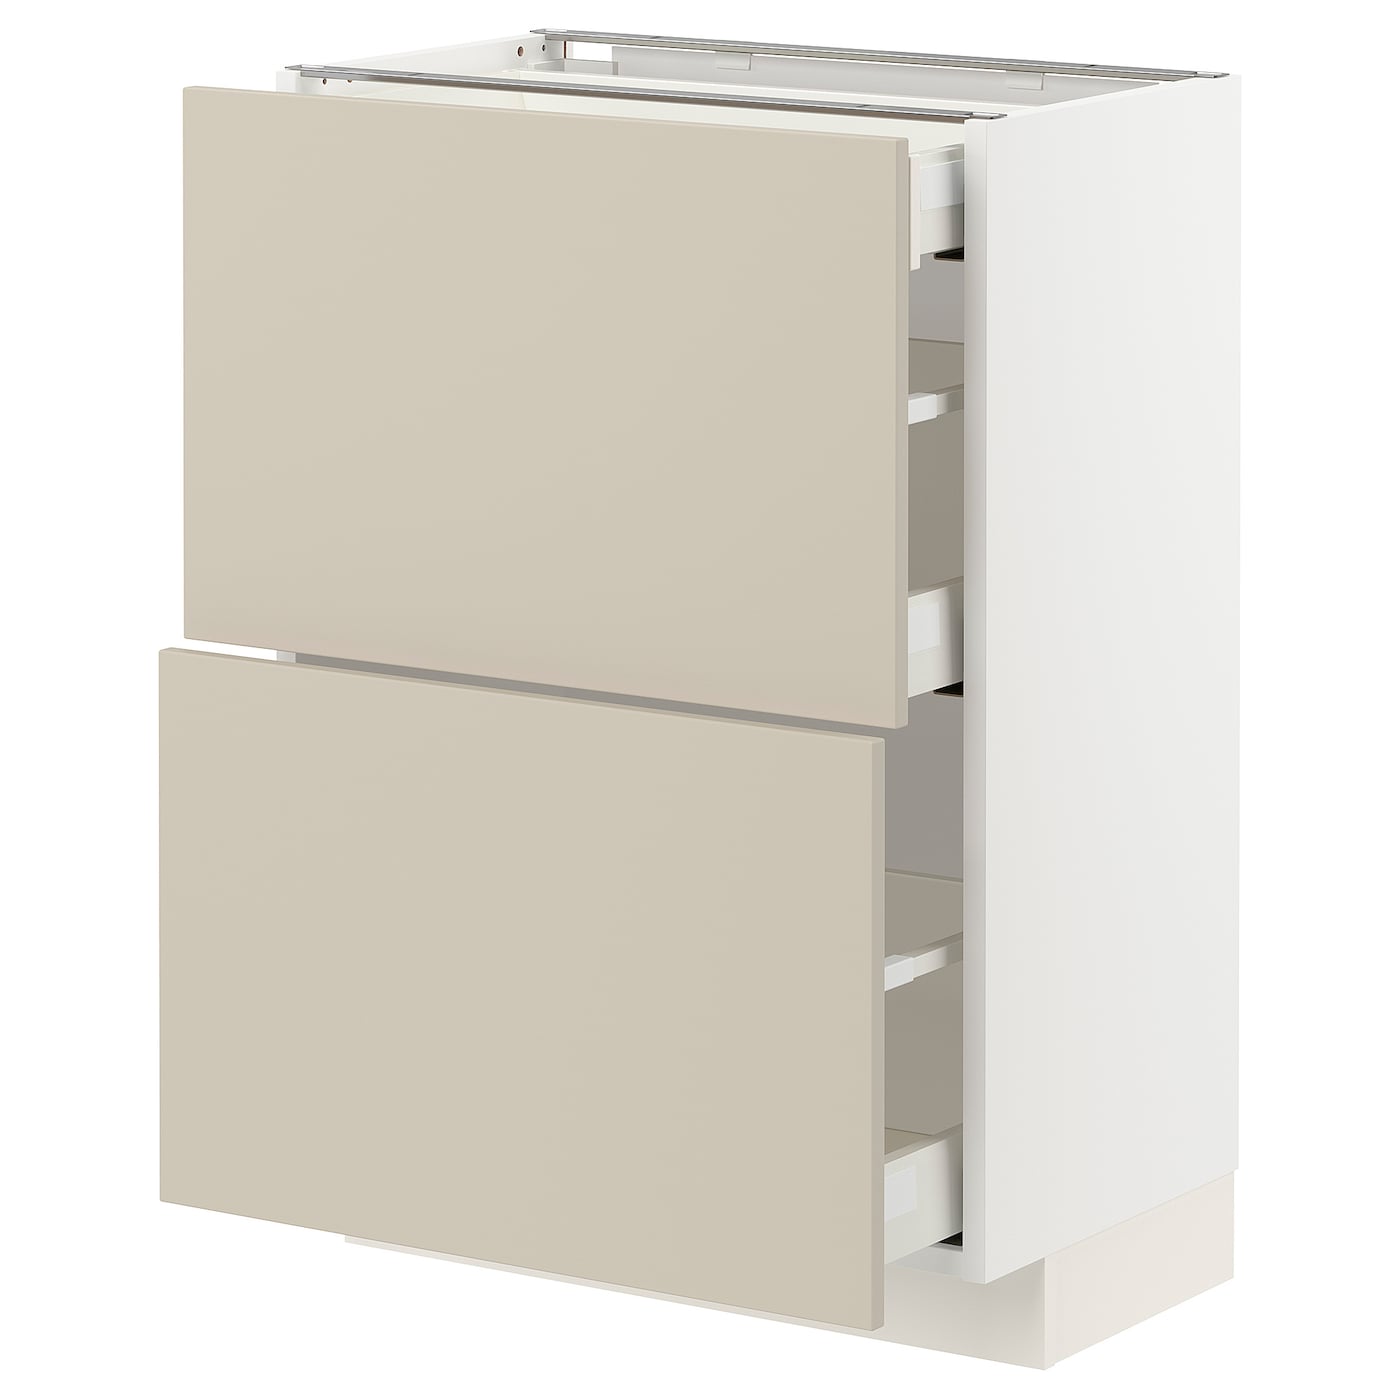 Напольный кухонный шкаф  - IKEA METOD MAXIMERA, 88x39x60см, белый/бежевый, МЕТОД МАКСИМЕРА ИКЕА